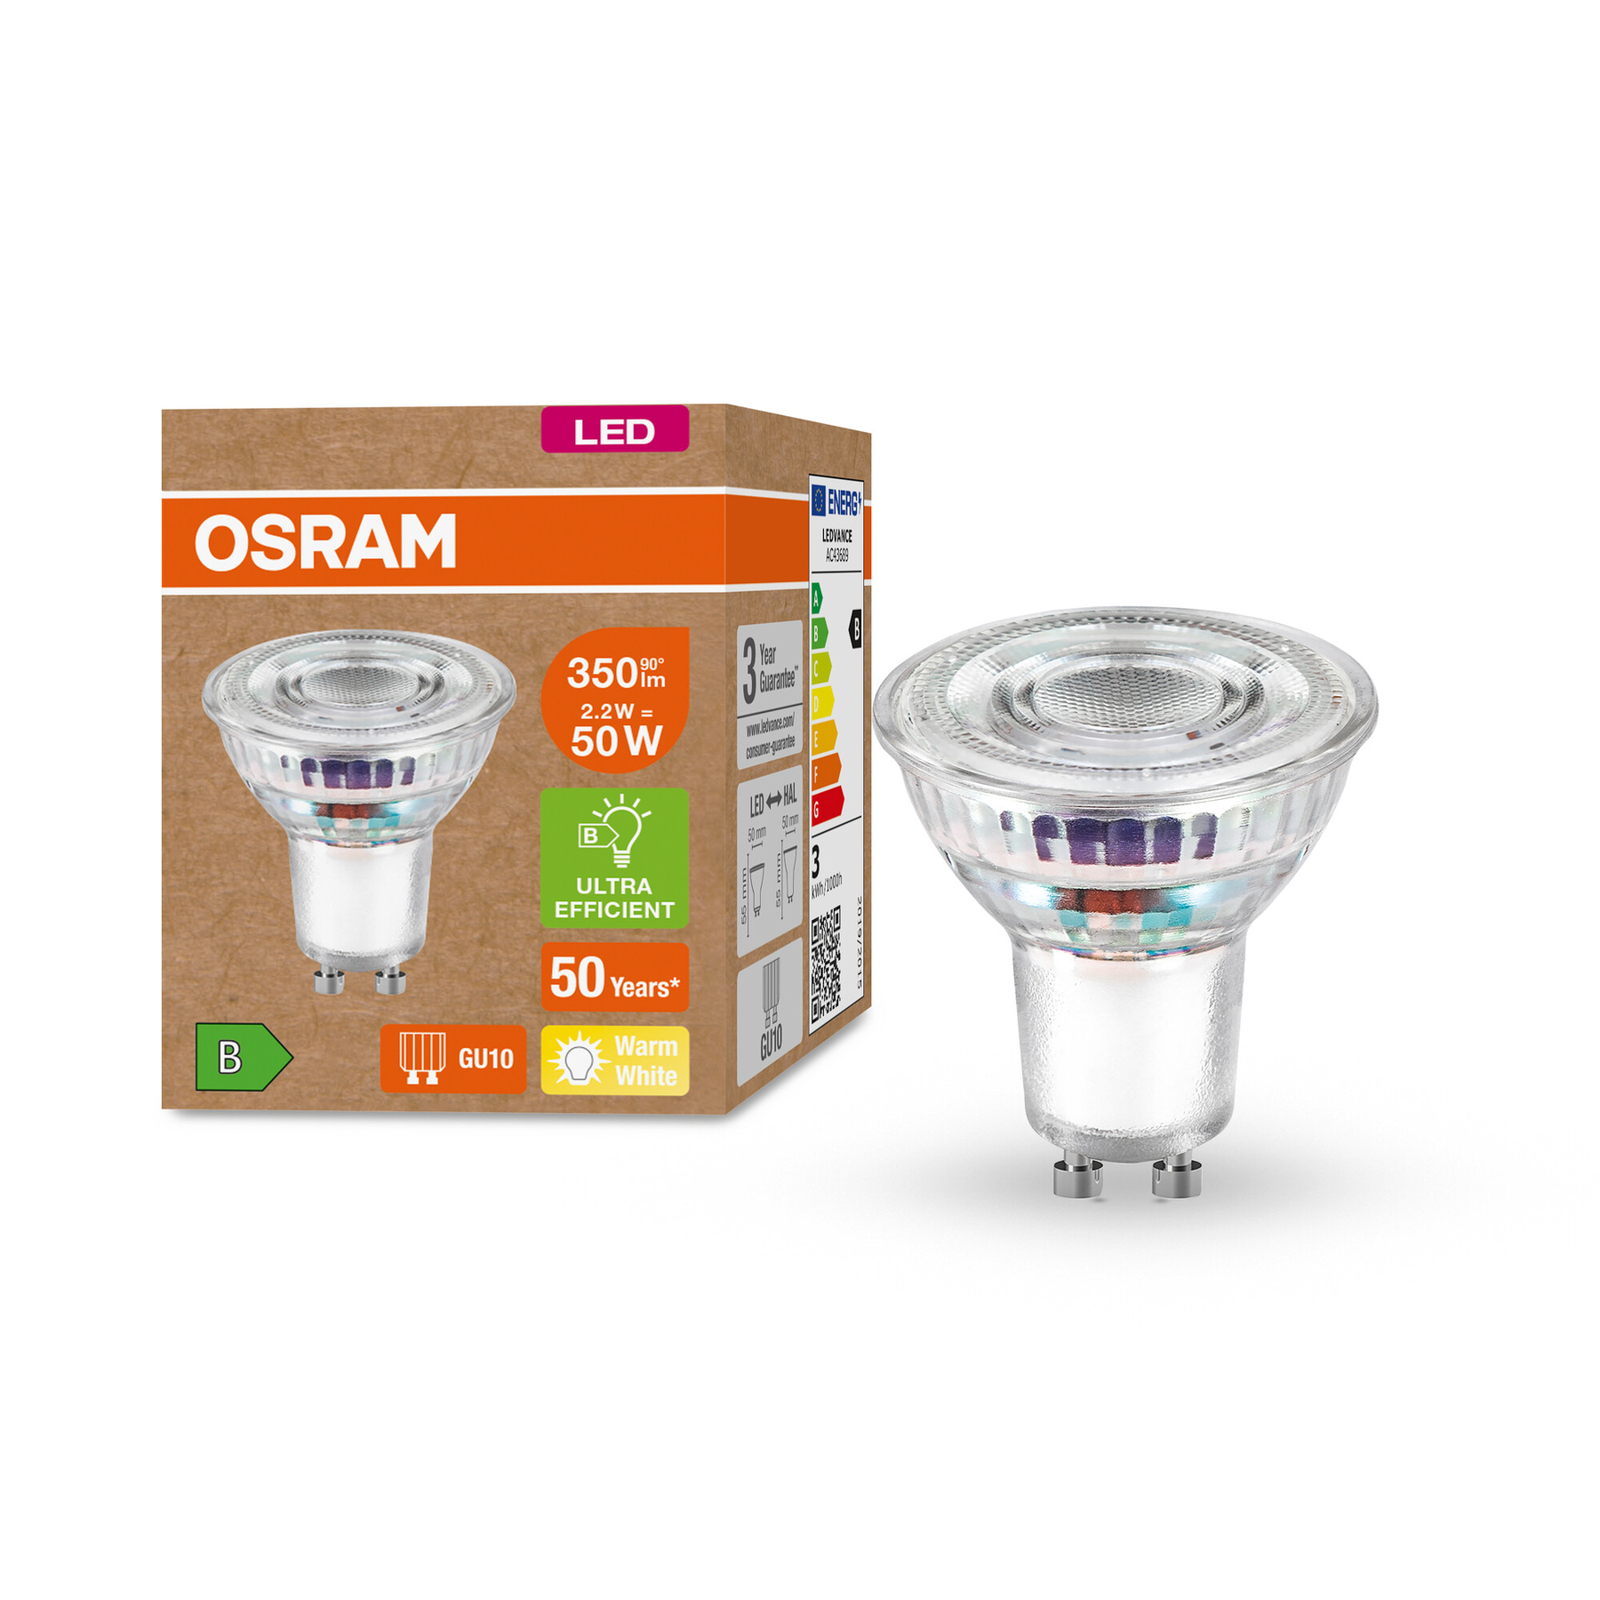 OSRAM LED-Reflektor GU10 PAR16 2,2W 350lm 827 36°